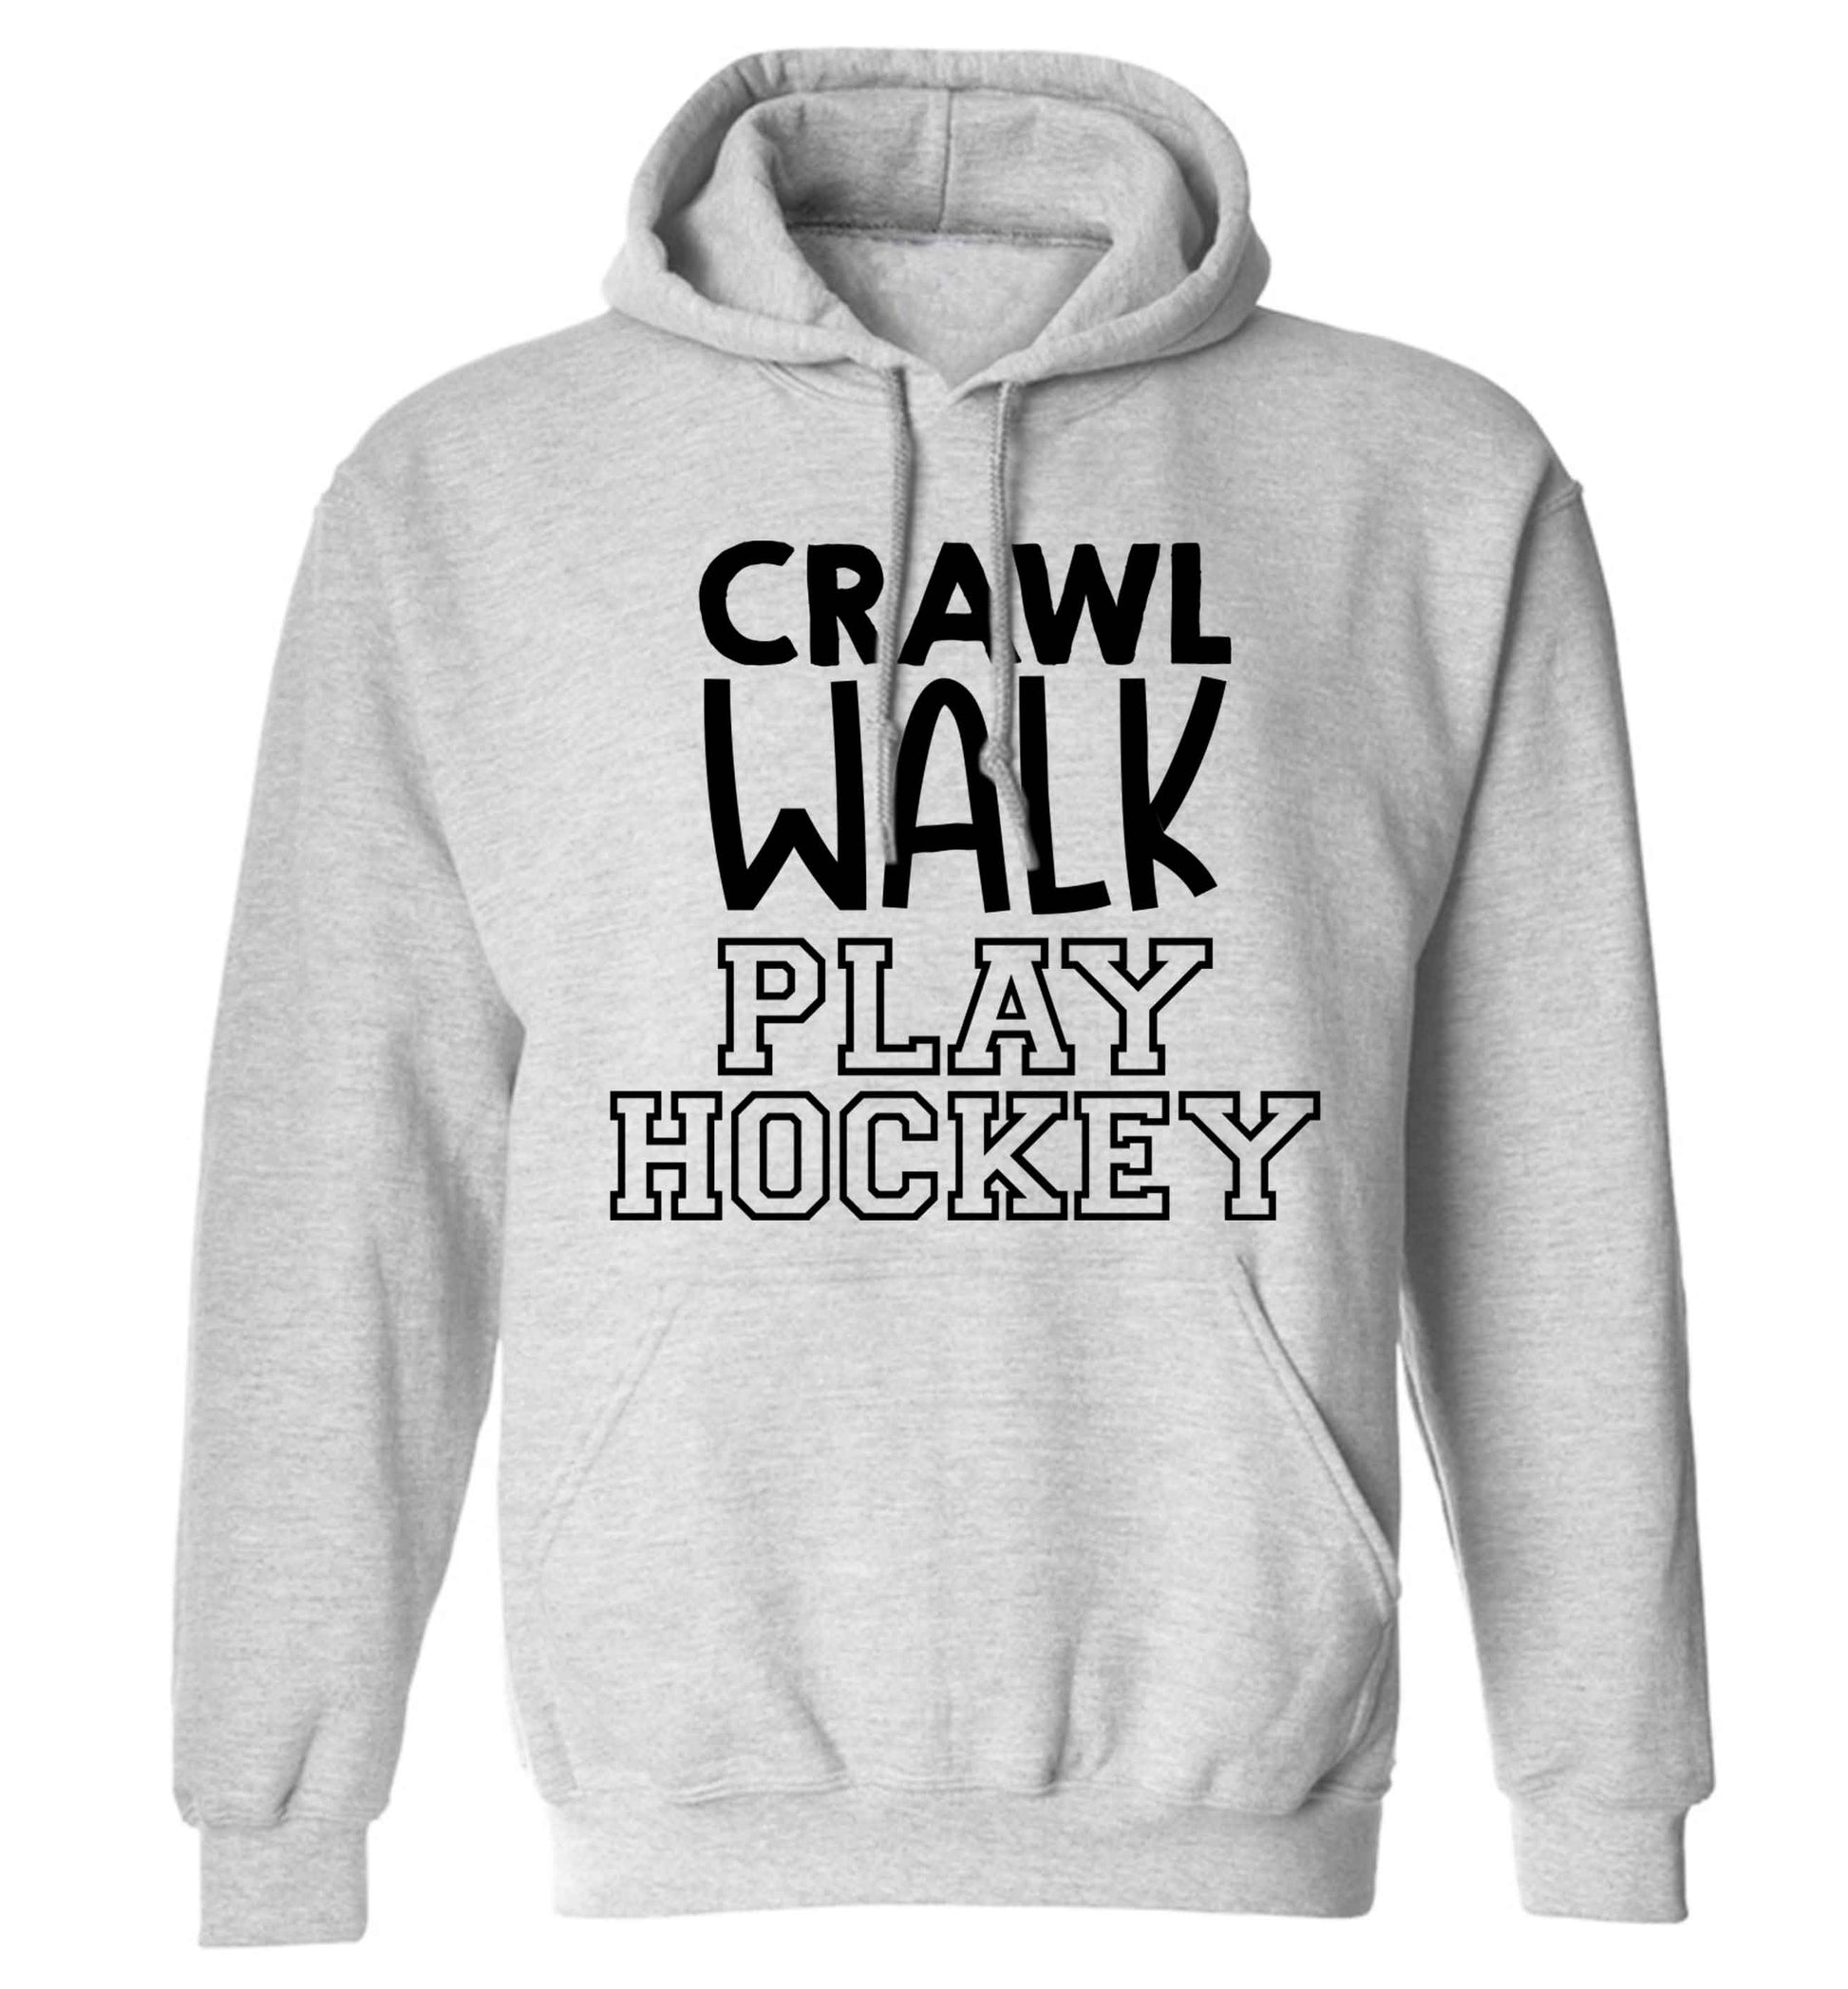 Crawl walk play hockey adults unisex grey hoodie 2XL